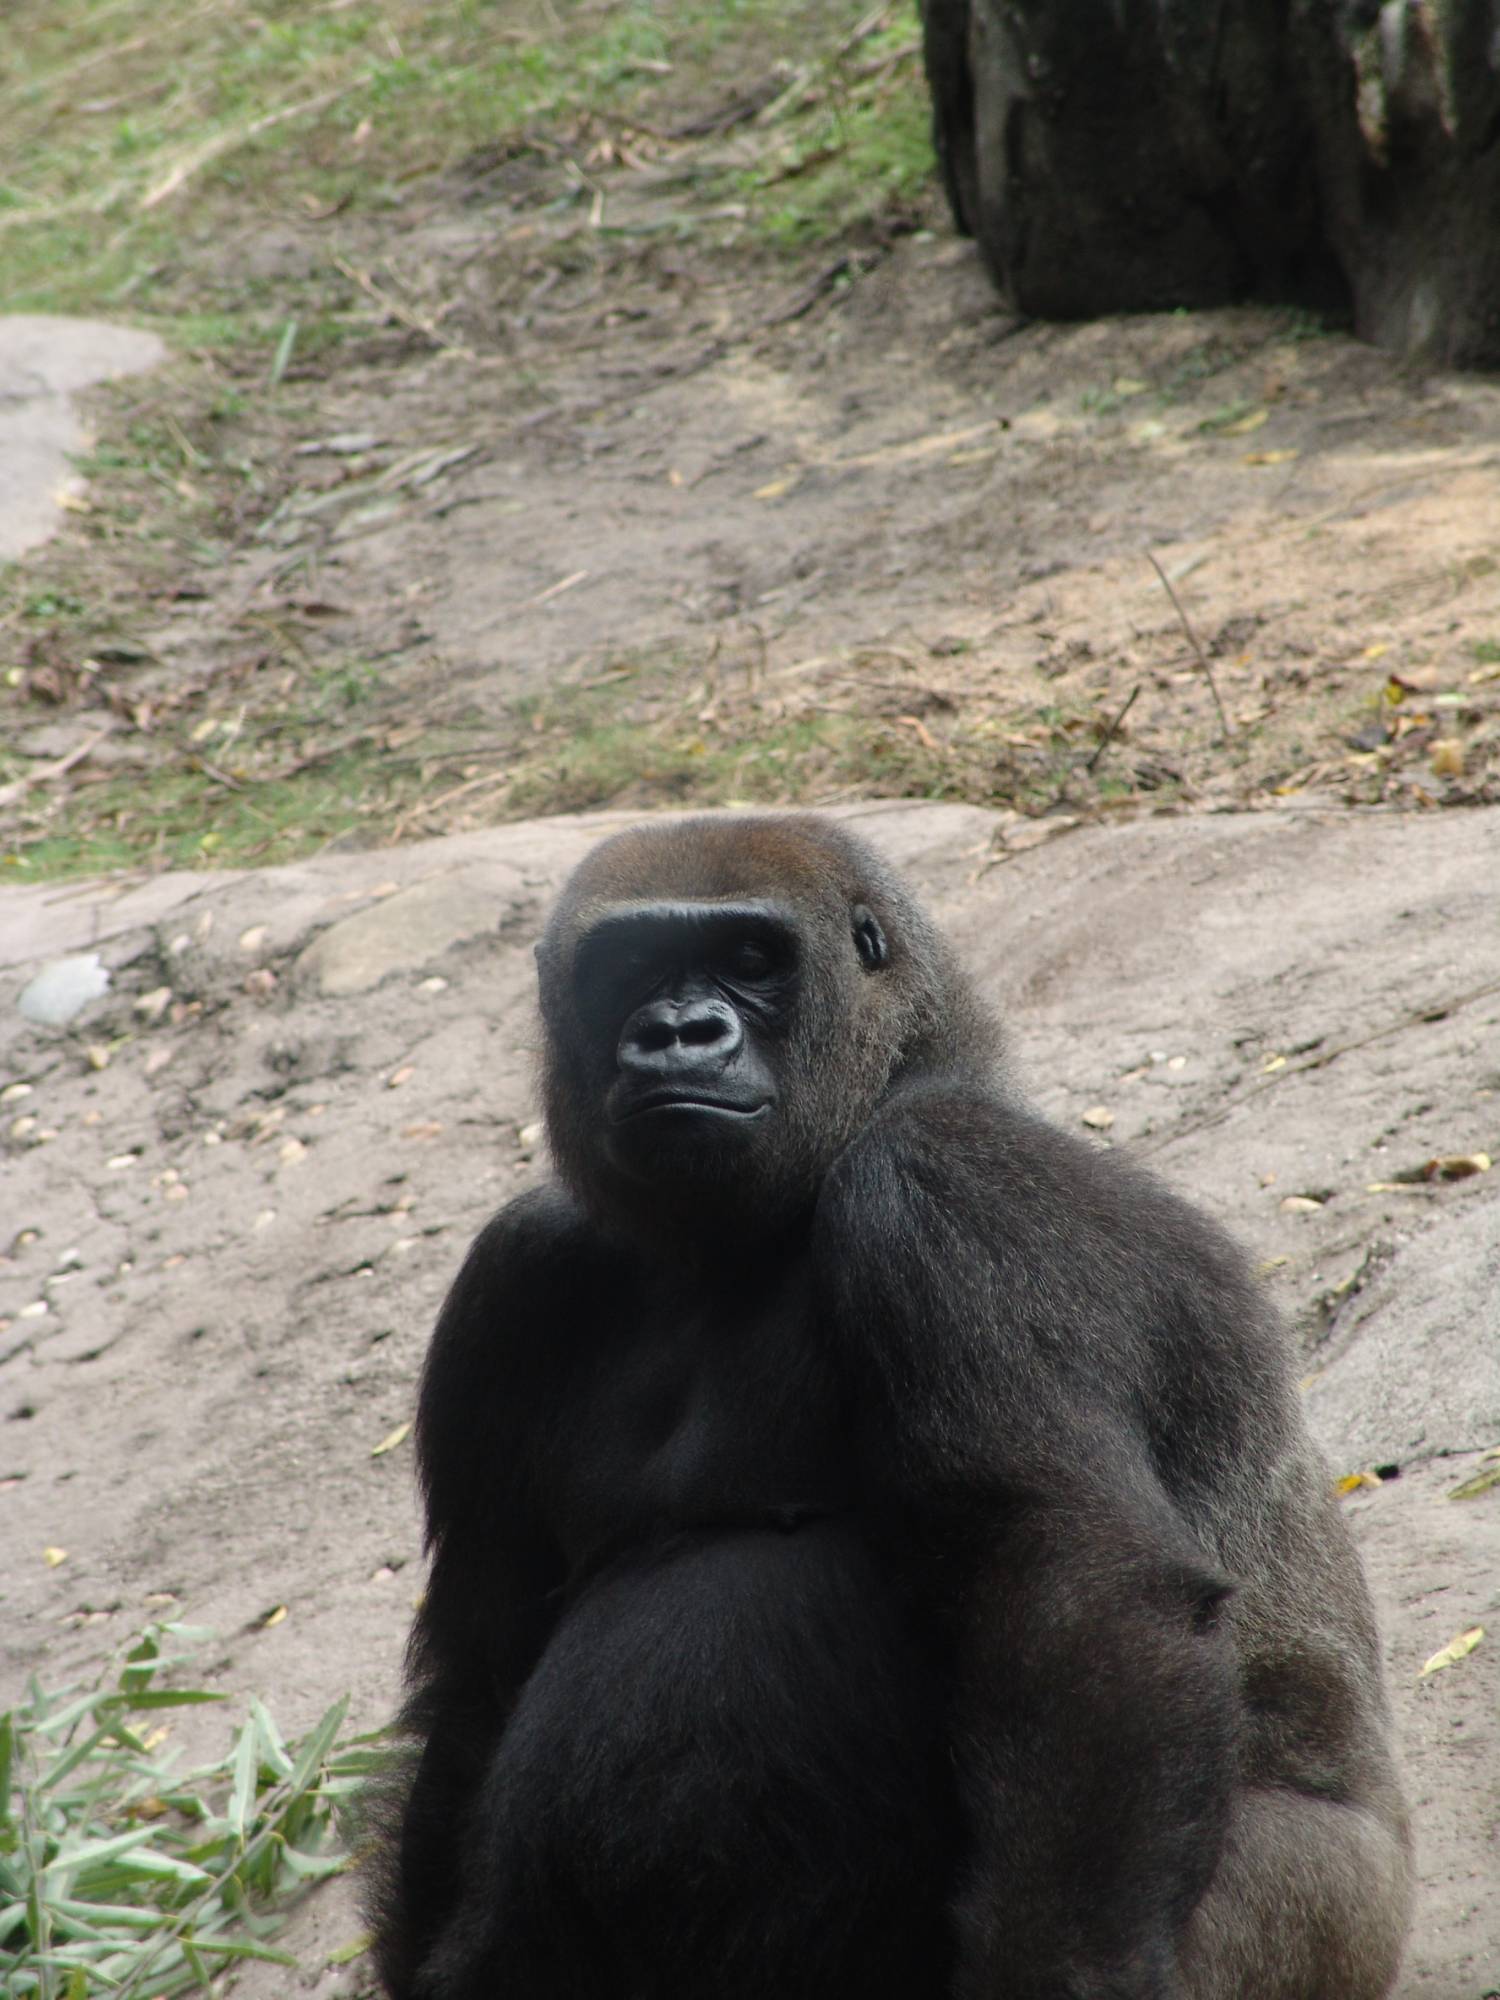 Animal Kingdom - gorilla sitting